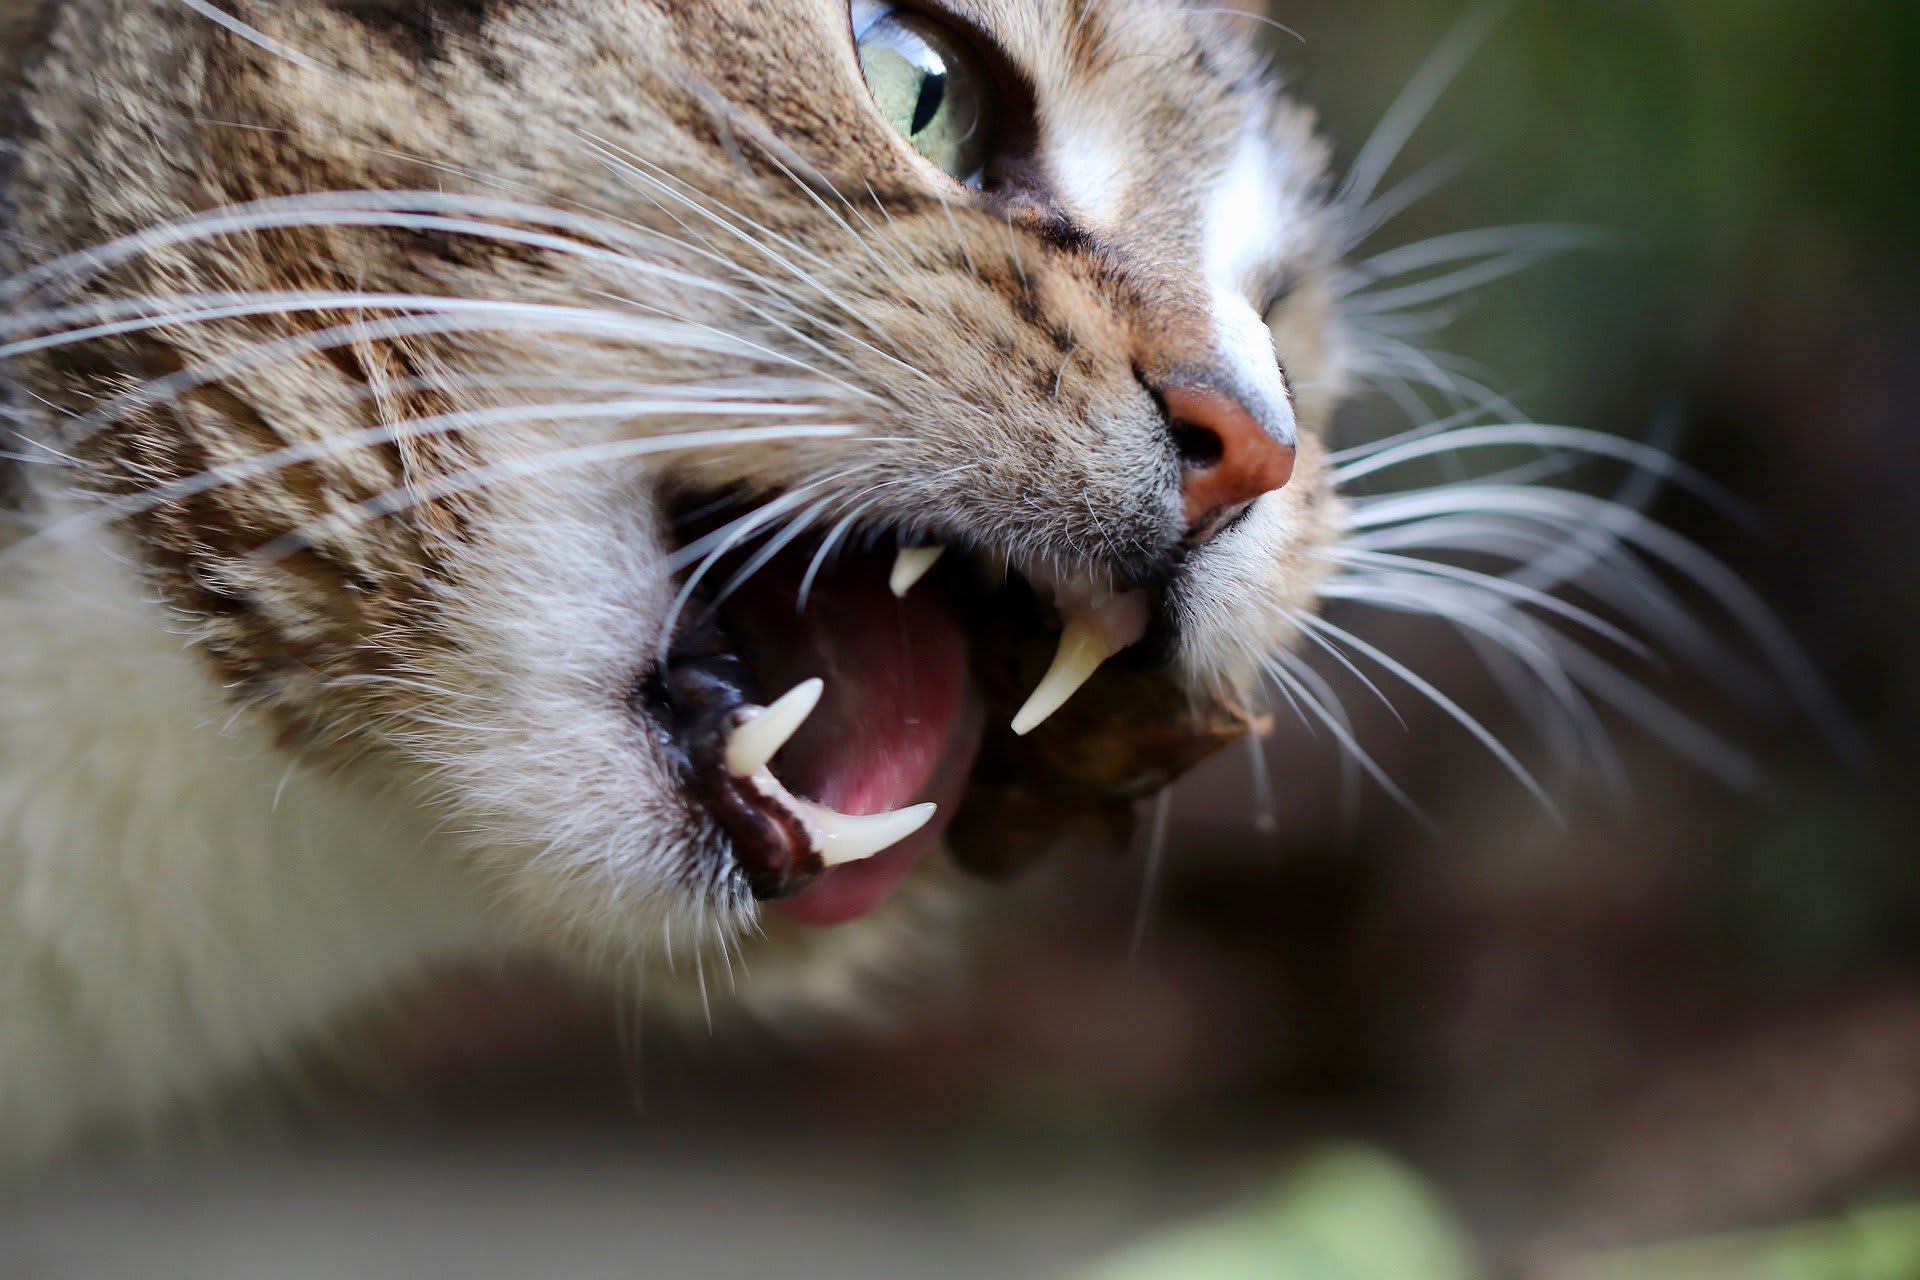 ospělá kočka je hodně náchylná k zubnímu kameni a paradentóze, většinou už od dvou let věku. Je proto nesmírně důležité kočce pravidelně doma čistit zuby a v rámci prevence s ní zajít jednou za půl roku k veterináři na prohlídku chrupu.